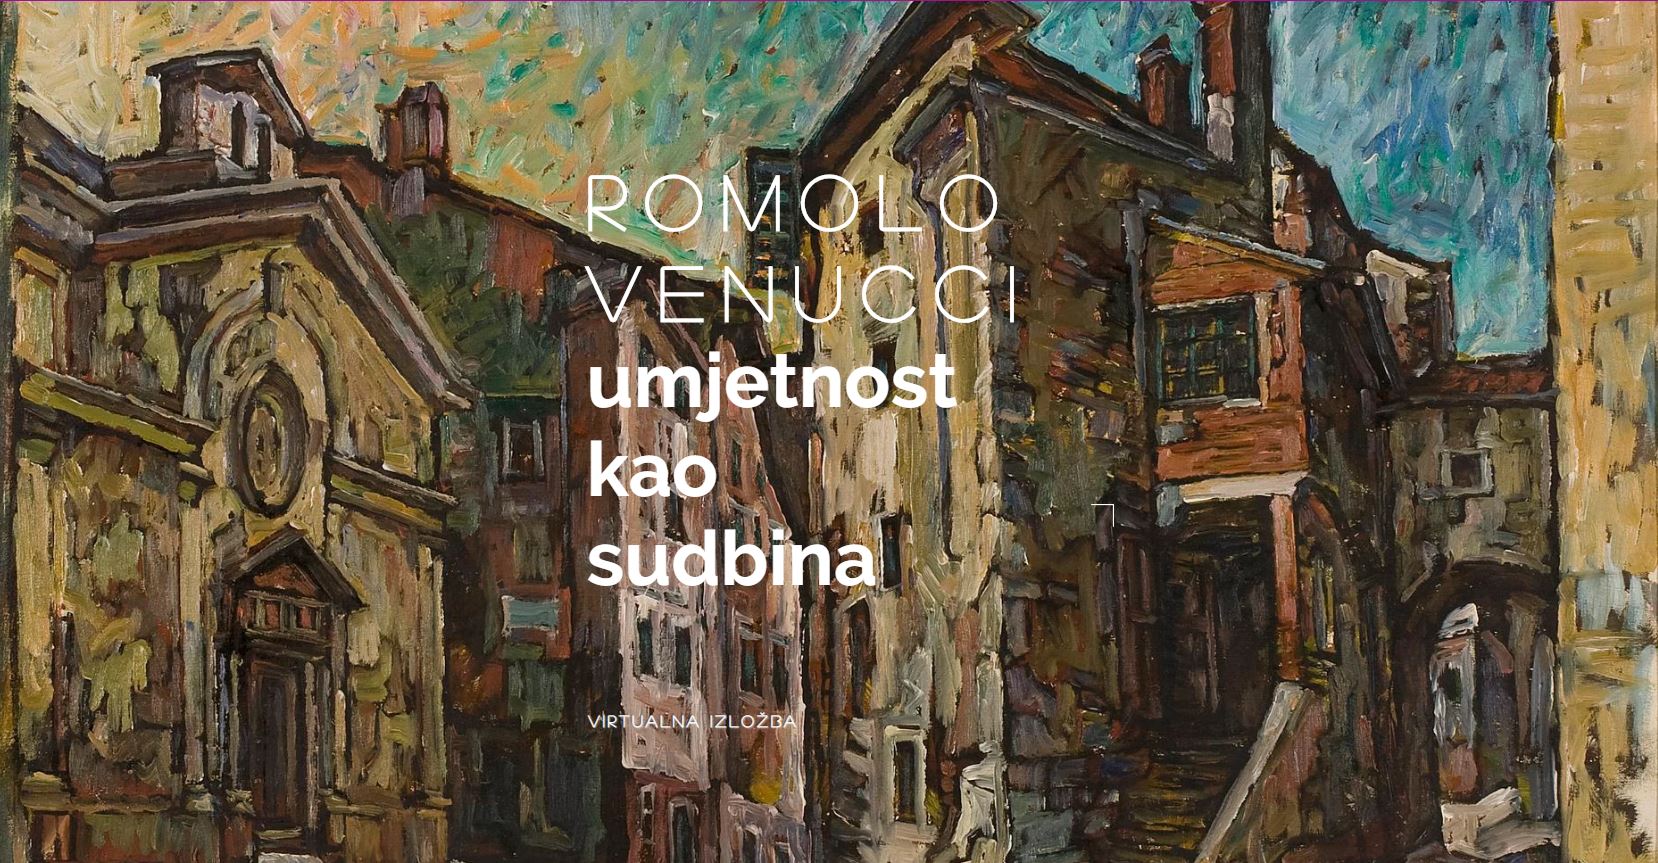 Romolo Venucci